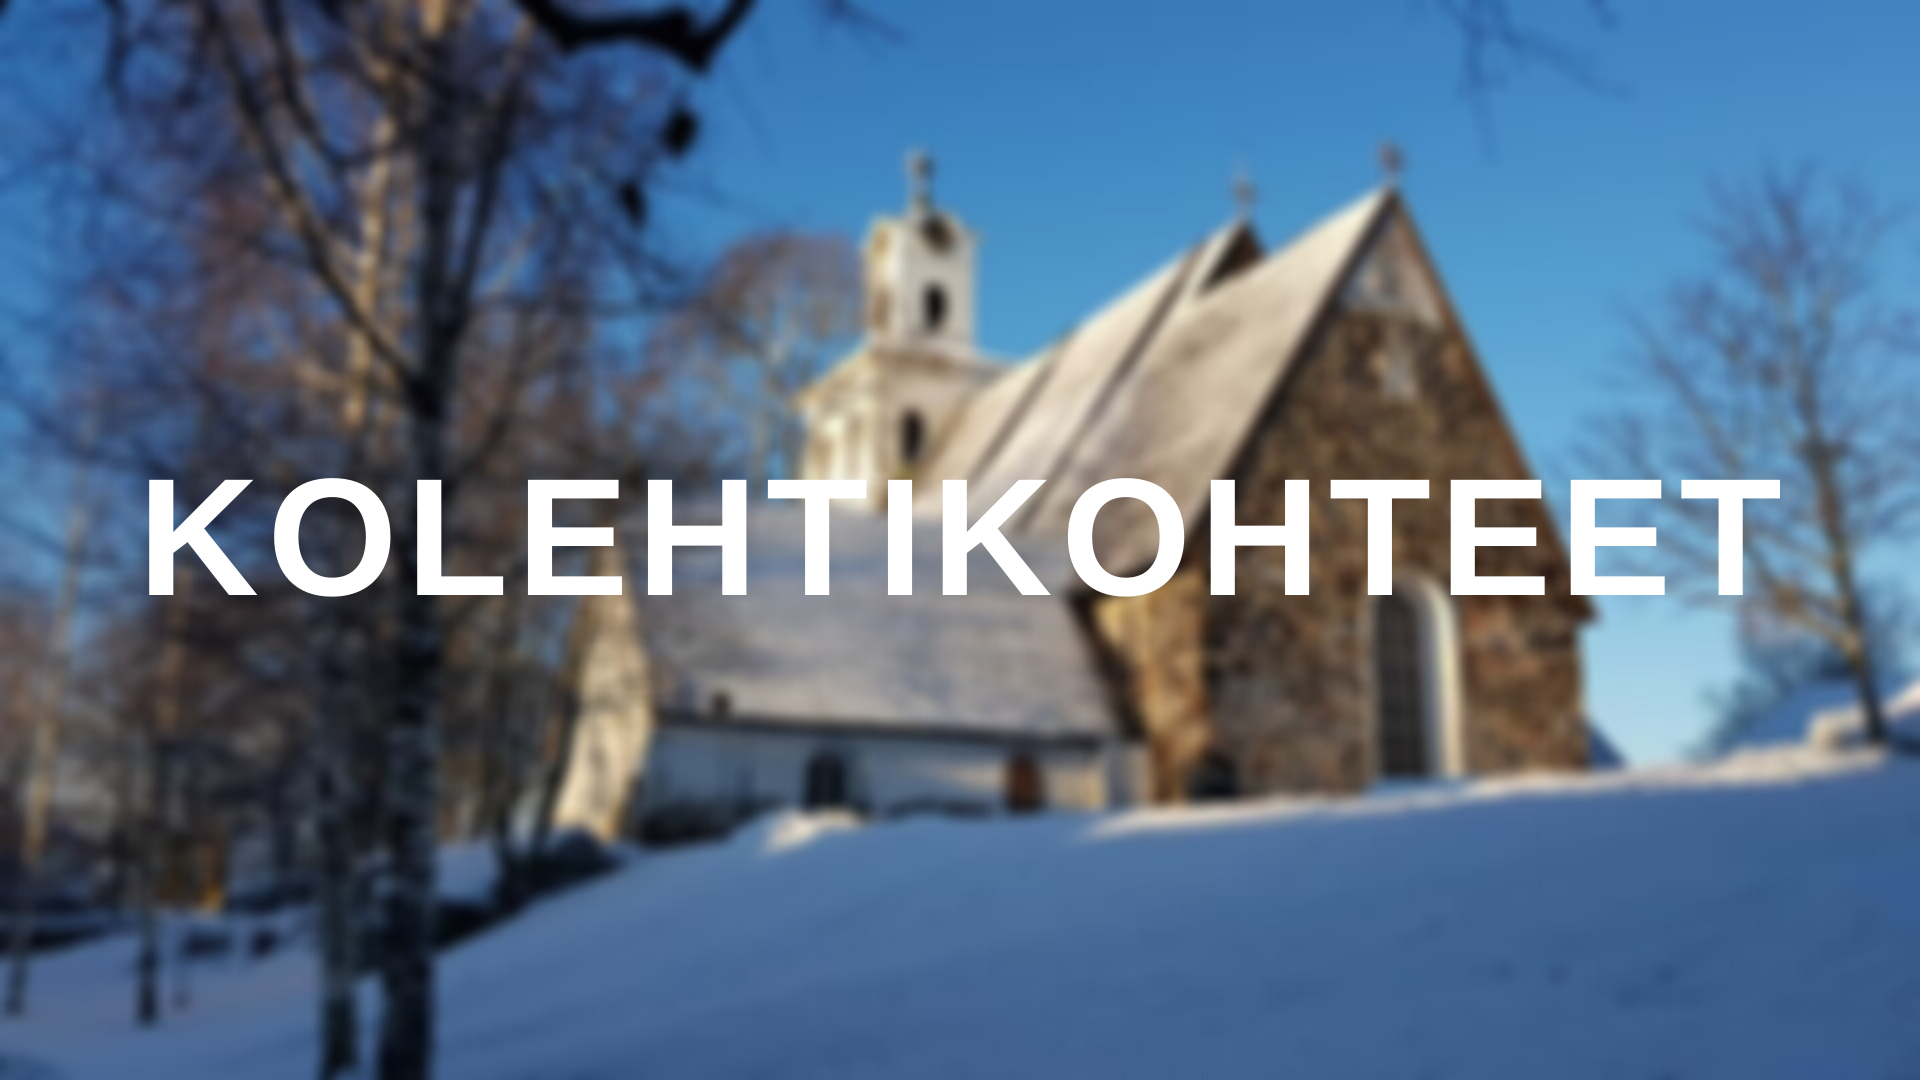 Sumea tausta Pyhän Ristin kirkosta talvella ja teksti: Kolehtikohteet